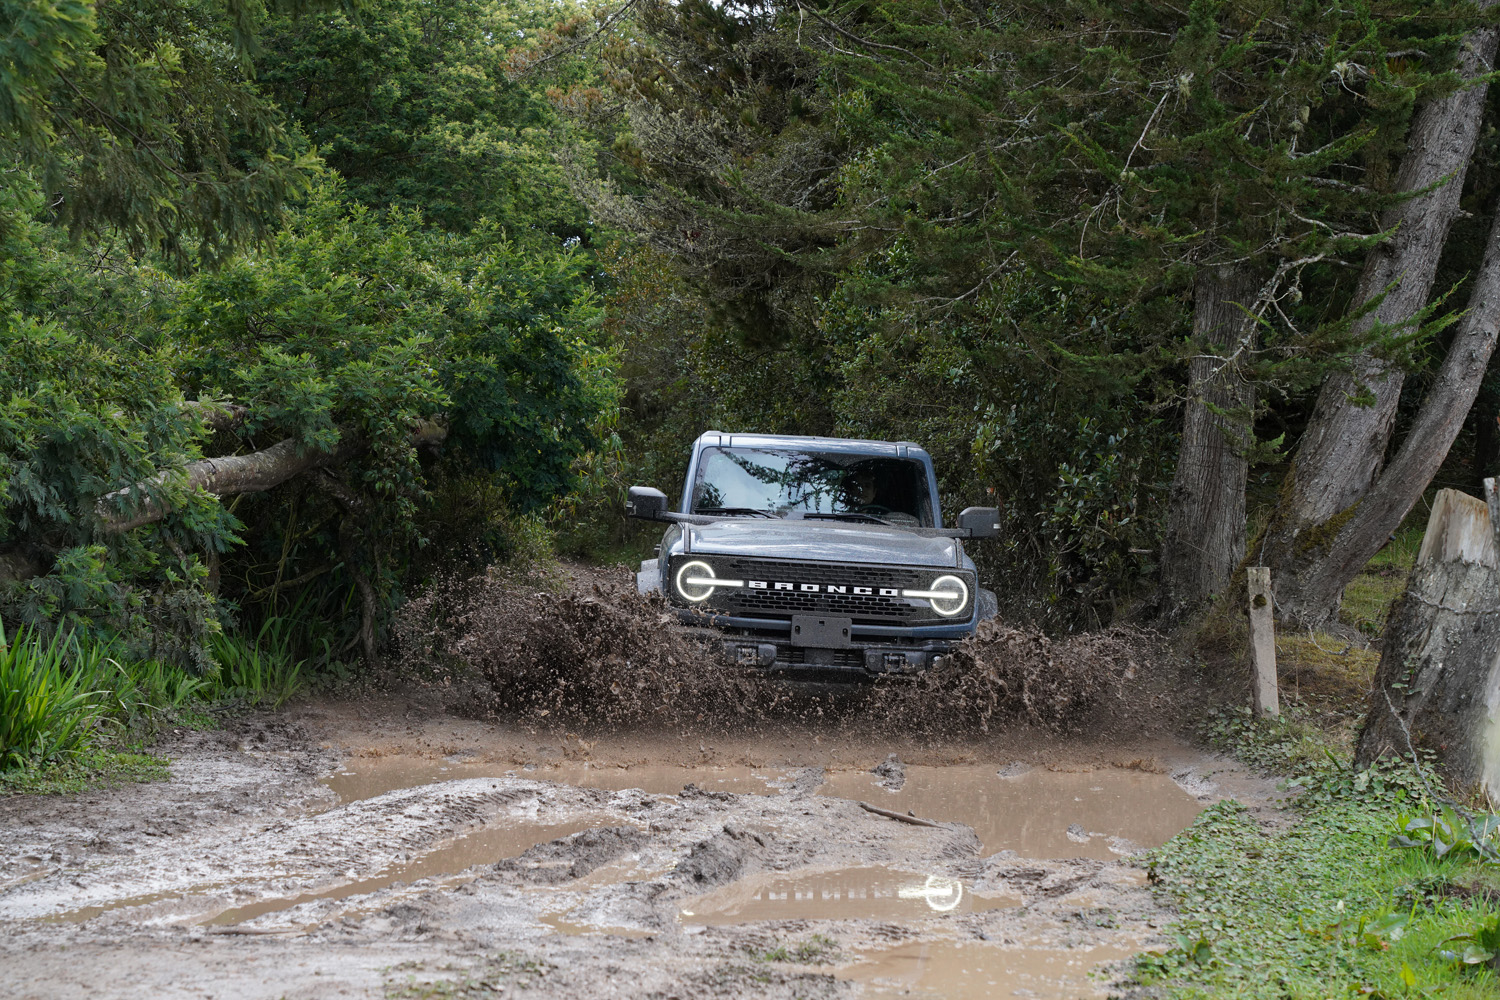 Con su presencia imponente y su herencia off-road, el Ford Bronco Wildtrak se erige como el compañero perfecto para aquellos que buscan la libertad en cada aventura. V12MAGAZINE